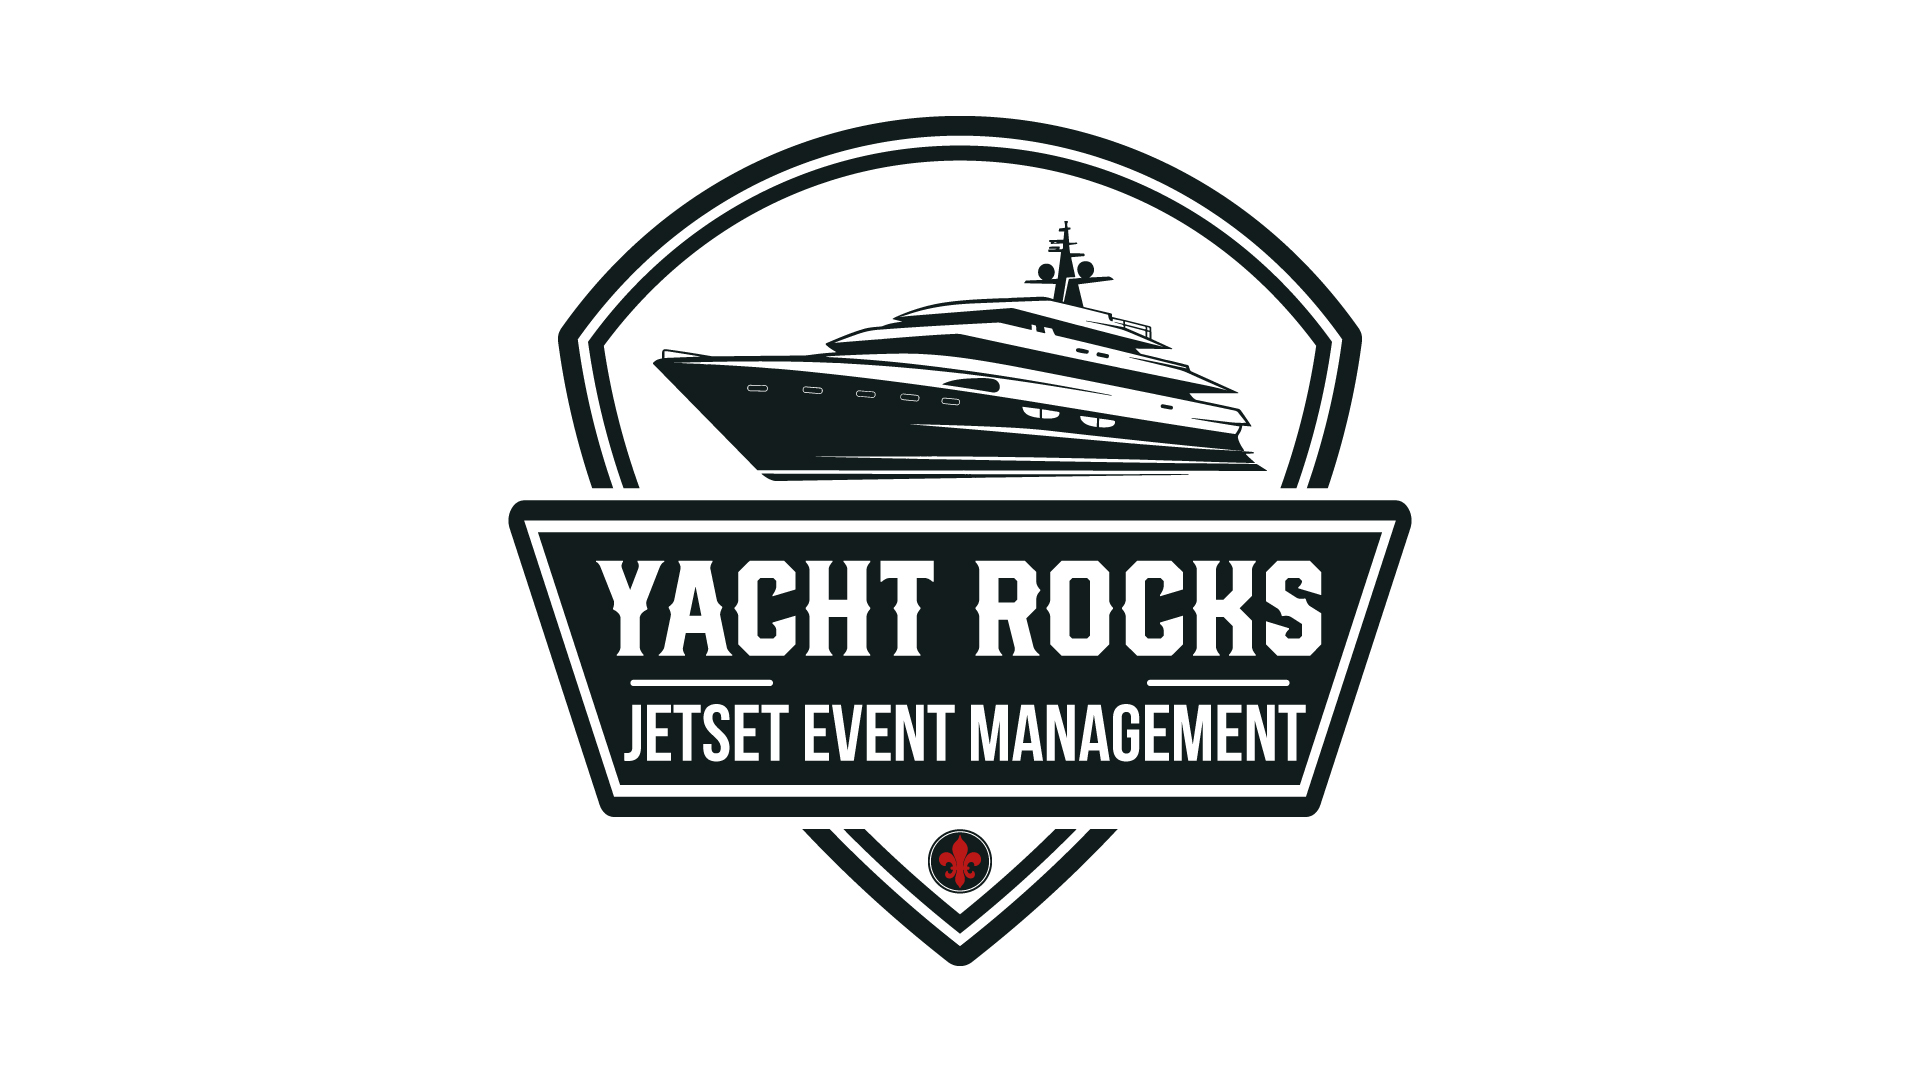 Yacht Rocks by Jetset